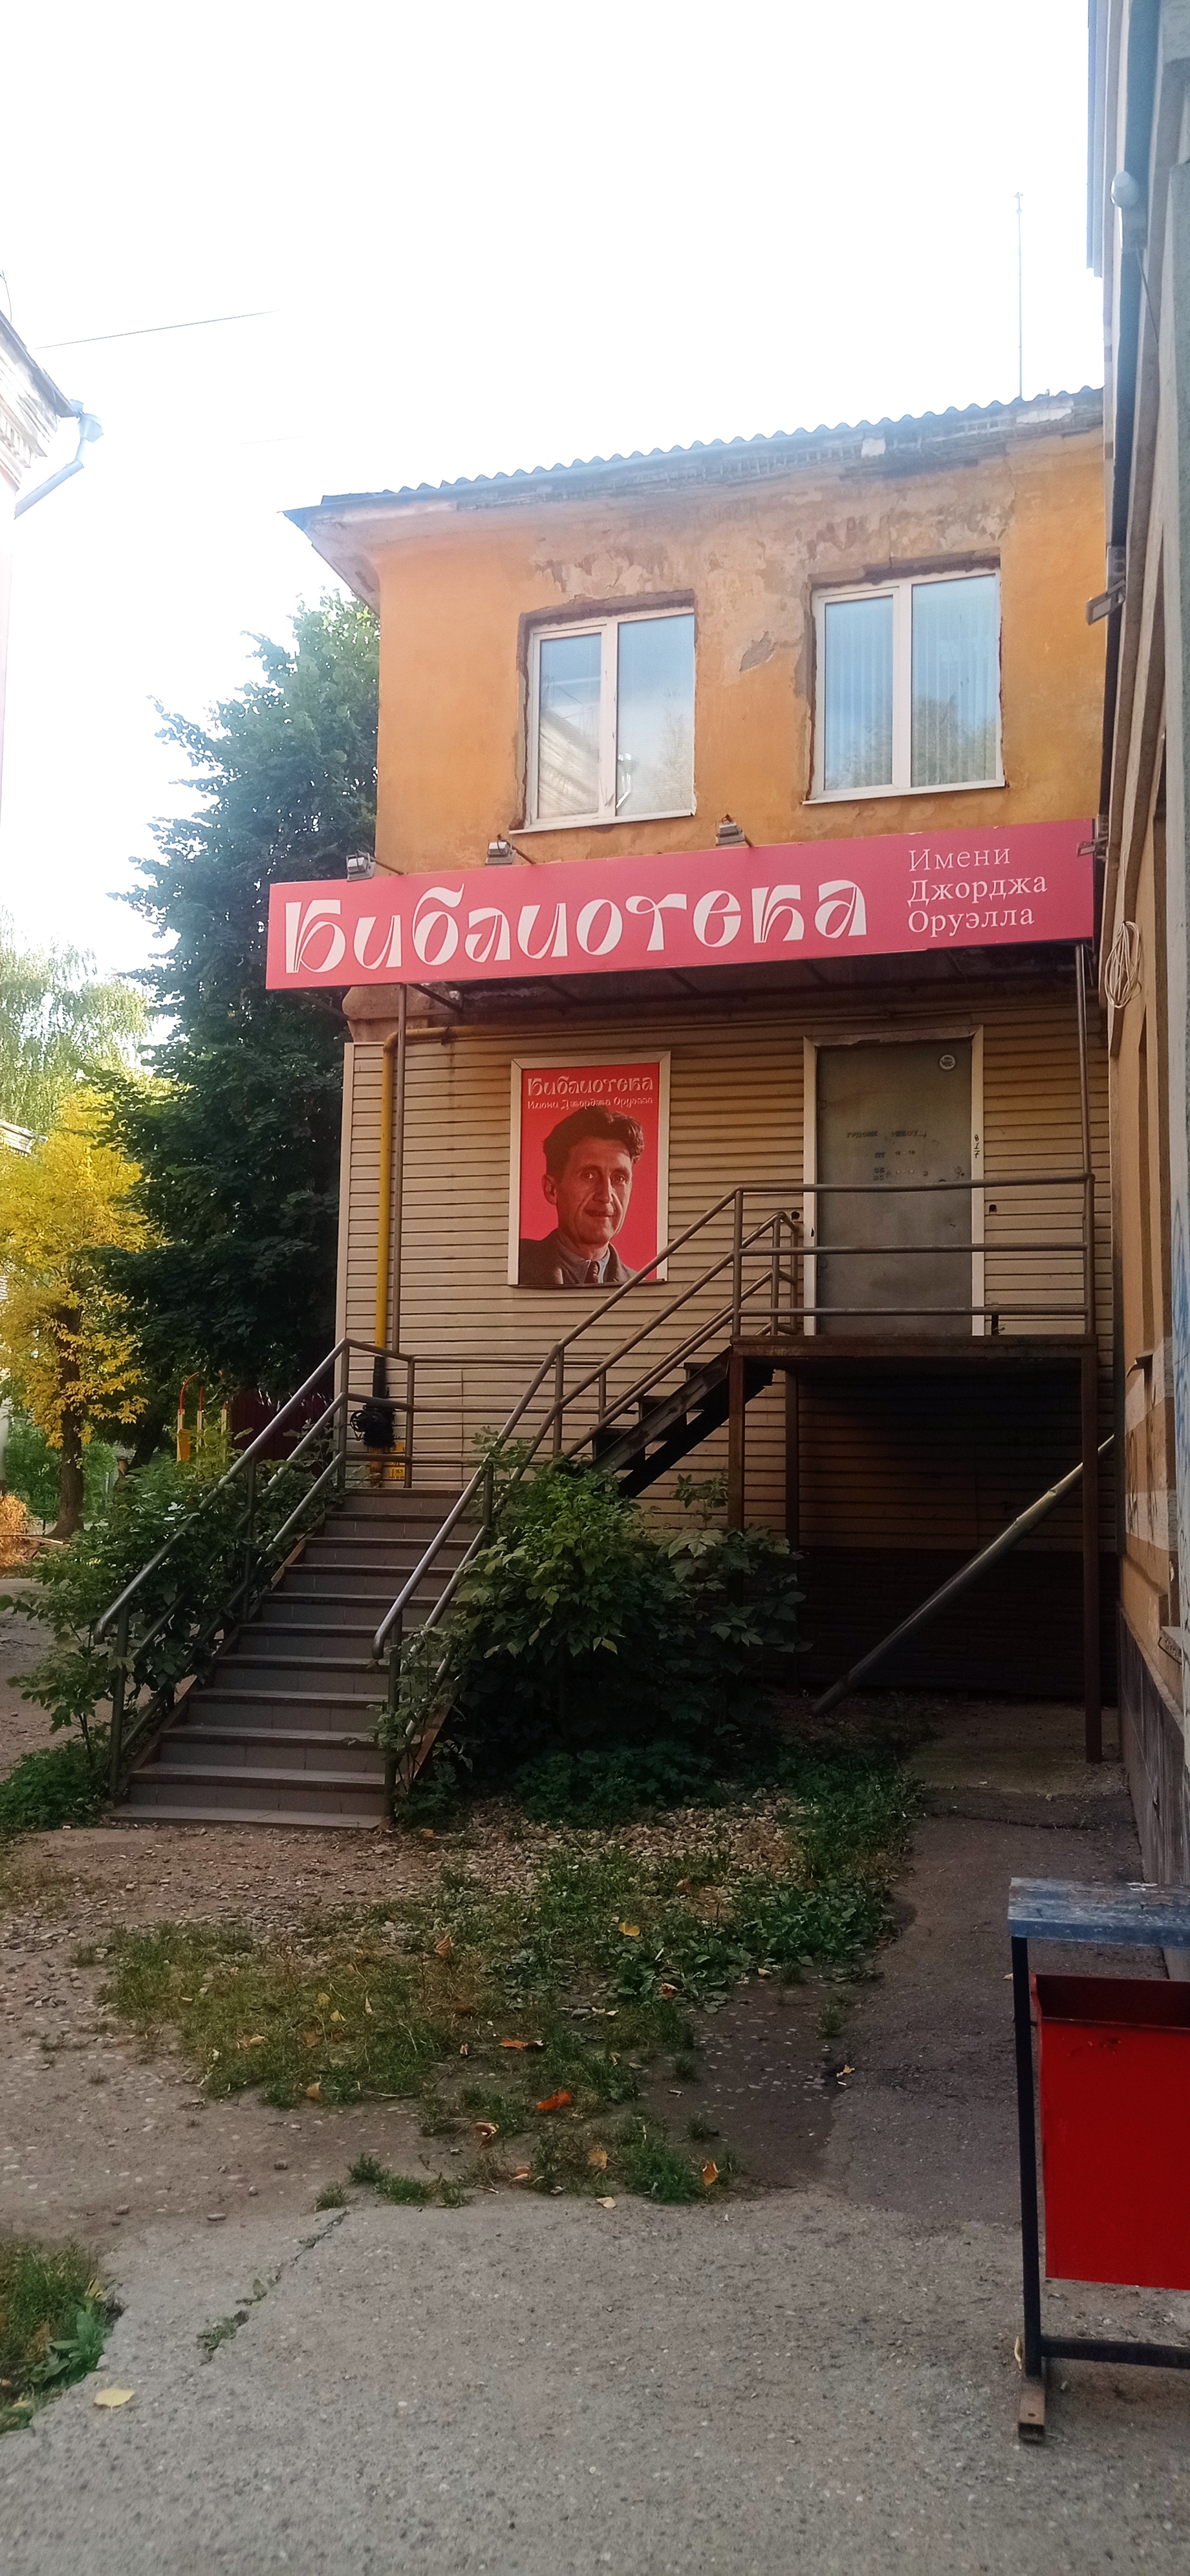 Библиотека имени Джорджа Оруэлла г. Иваново, на Садовой улице.